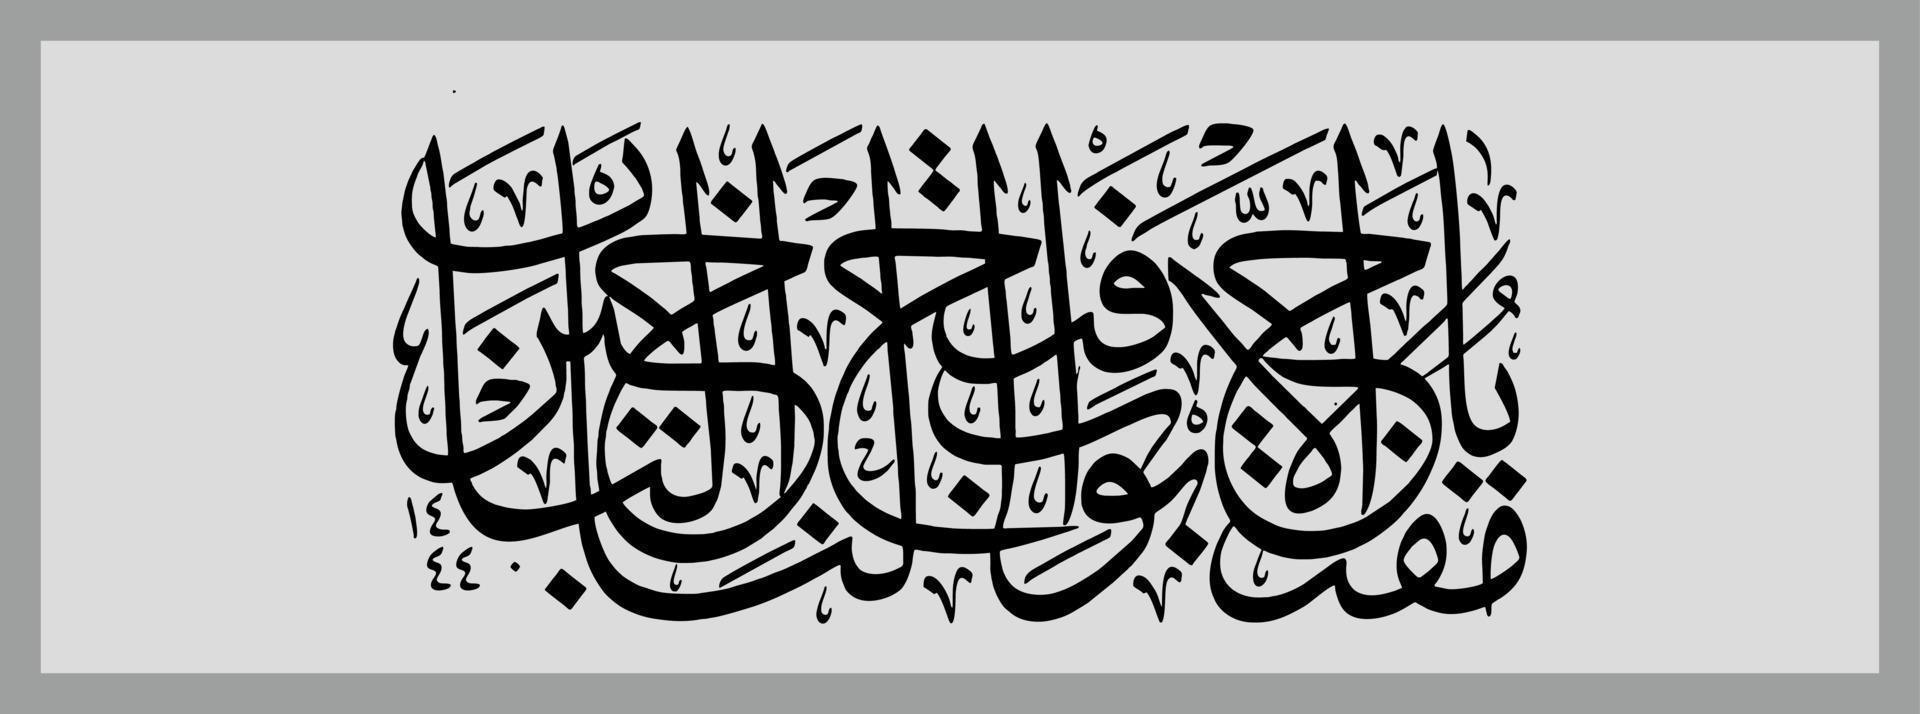 arabicum kalligrafi mall, menande för Allt din design behov, banderoller, klistermärken, ramadan flygblad, etc vektor